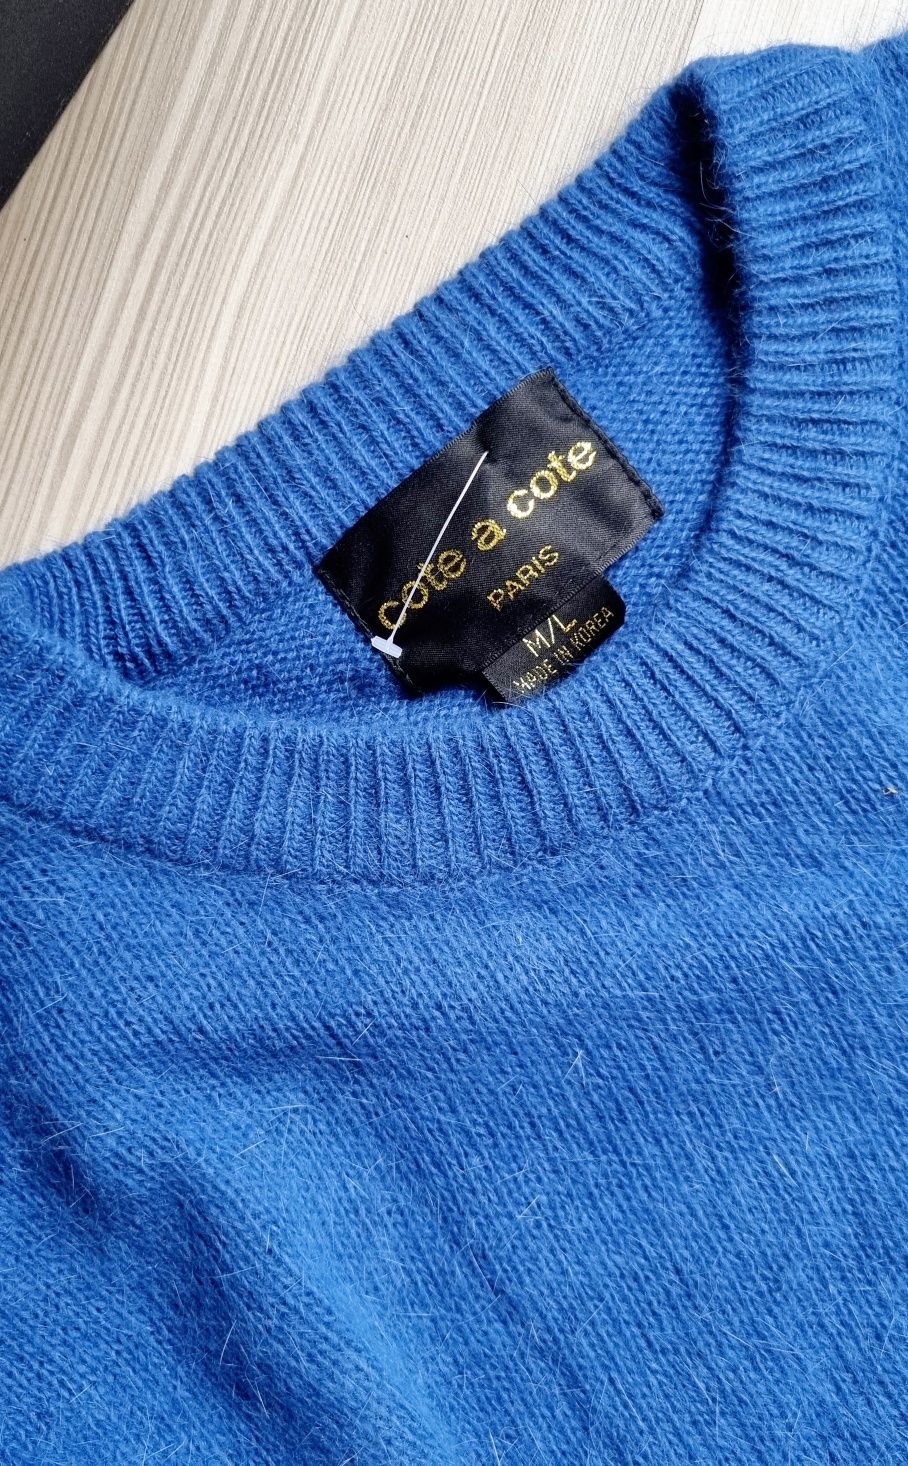 Новый корейский тёплый синий яркий ангоровый свитер